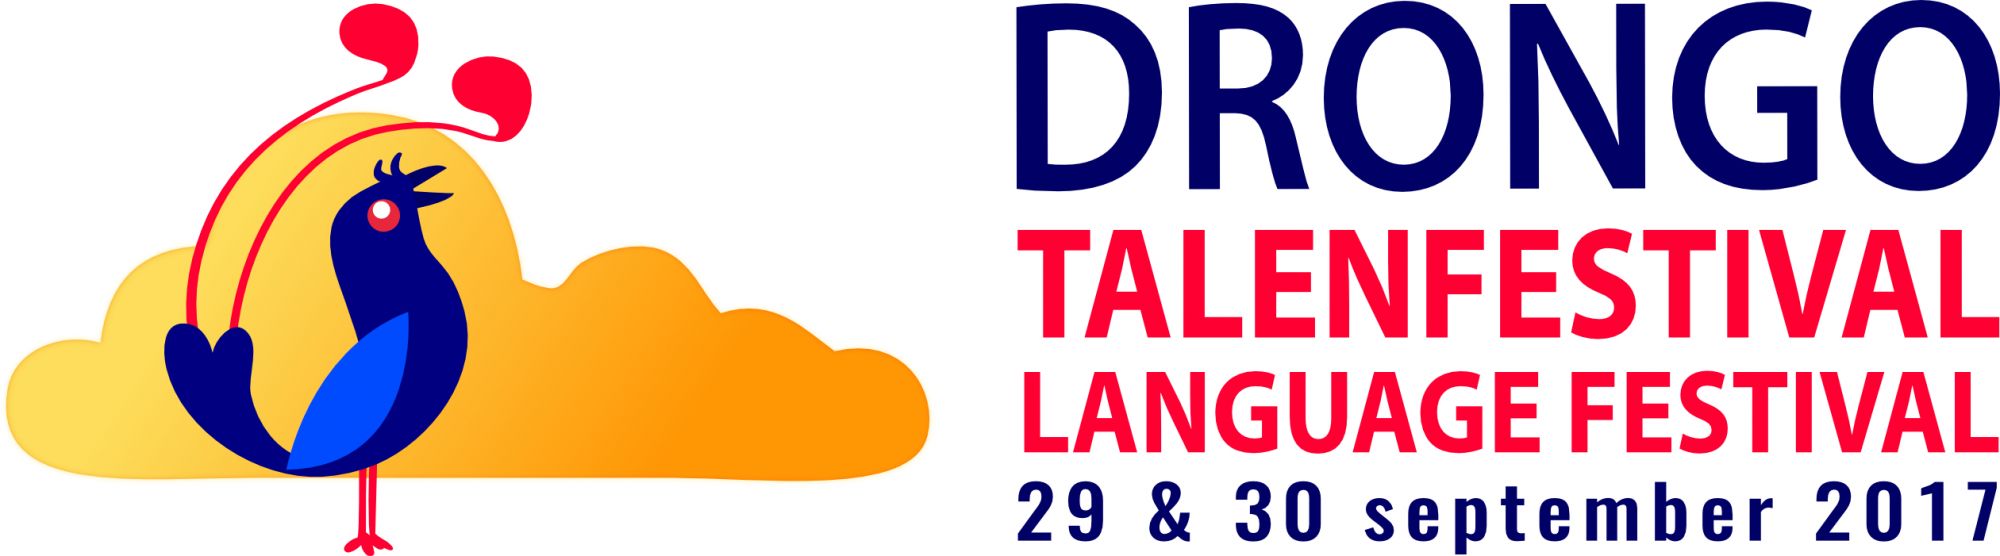 Met korting naar het DRONGO talenfestival 2017